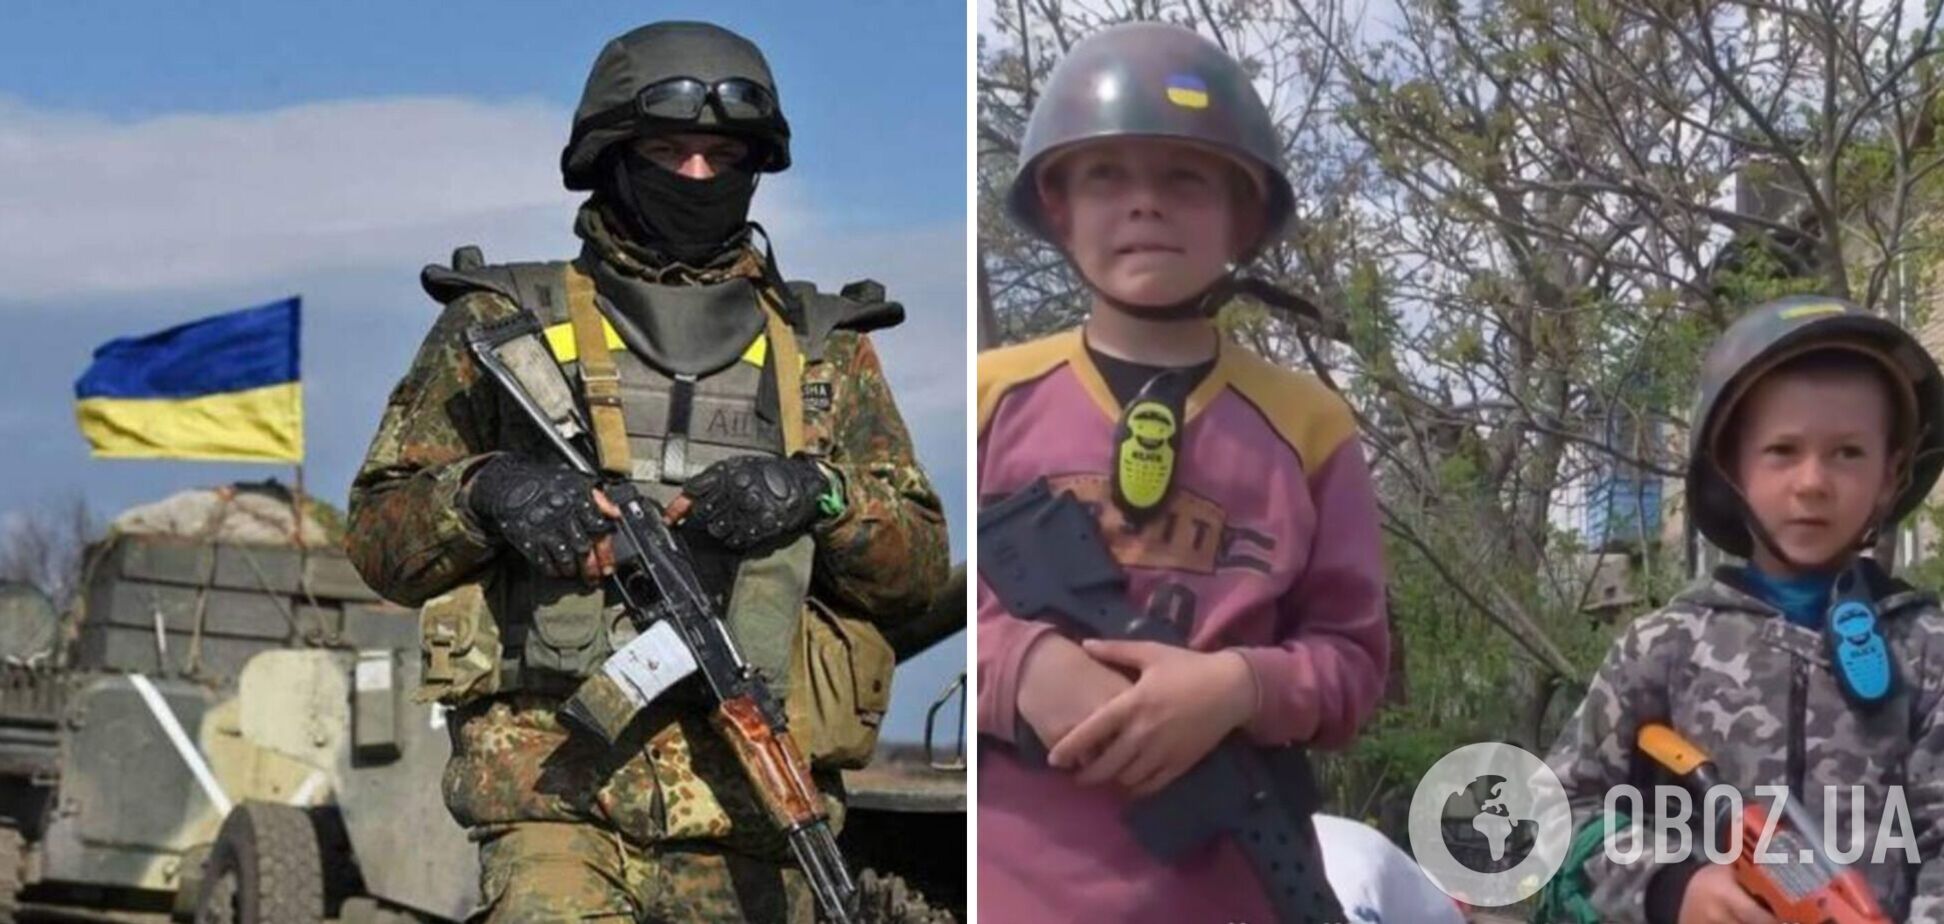 'Я не боюсь, чувствую, что мужик!' Дети устроили блокпост в Киевской области и рассказали о войне. Видео